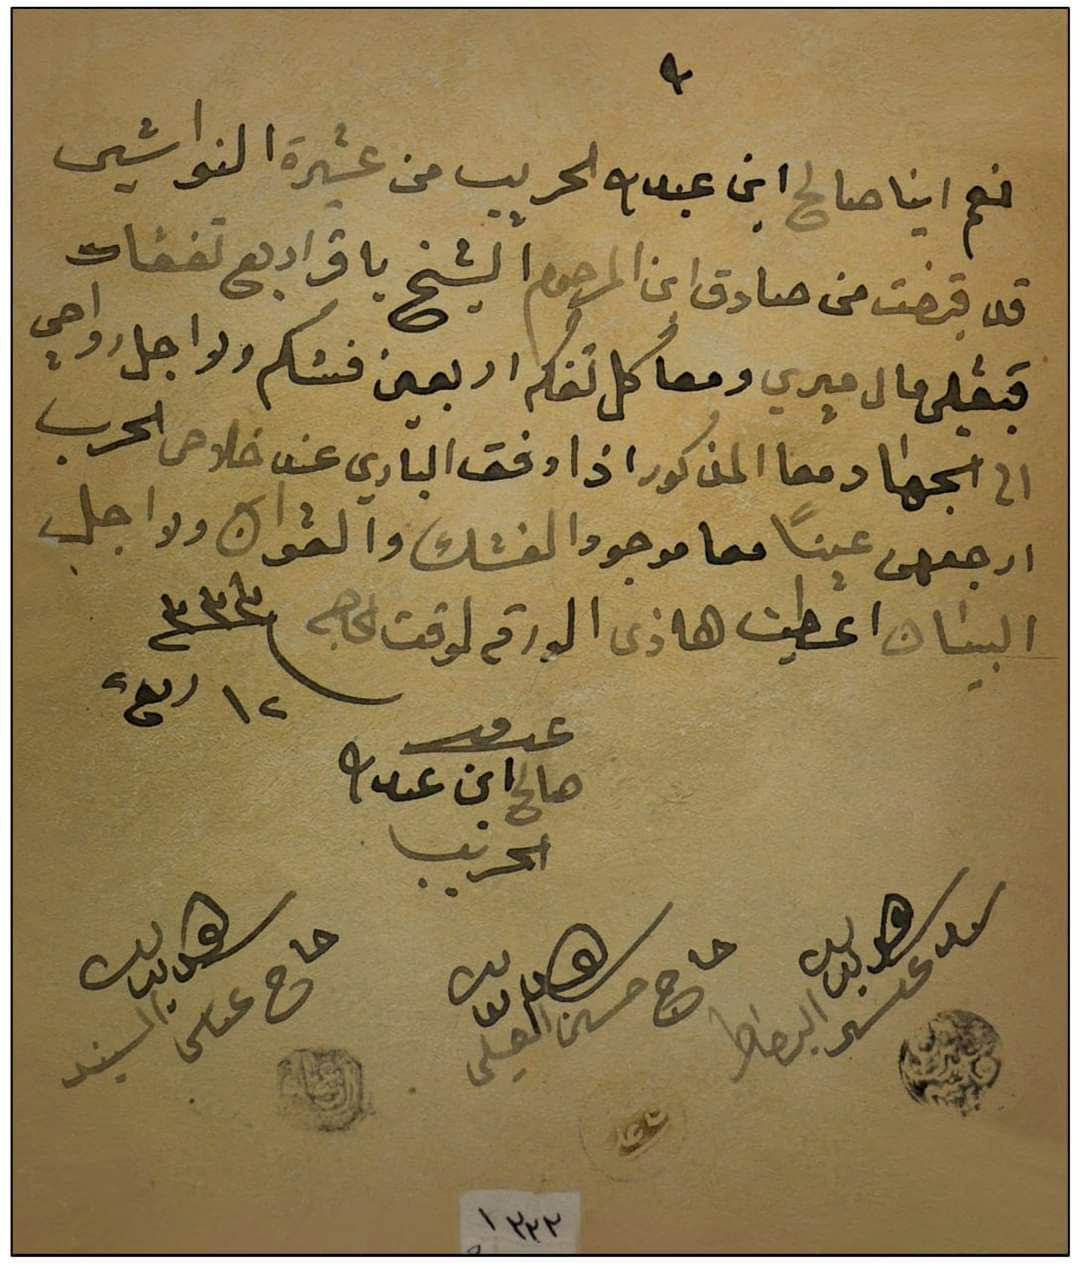 دور الشيخ باقر الشيخ حيدر (ت 1915م) في حركة الجهاد 1914م